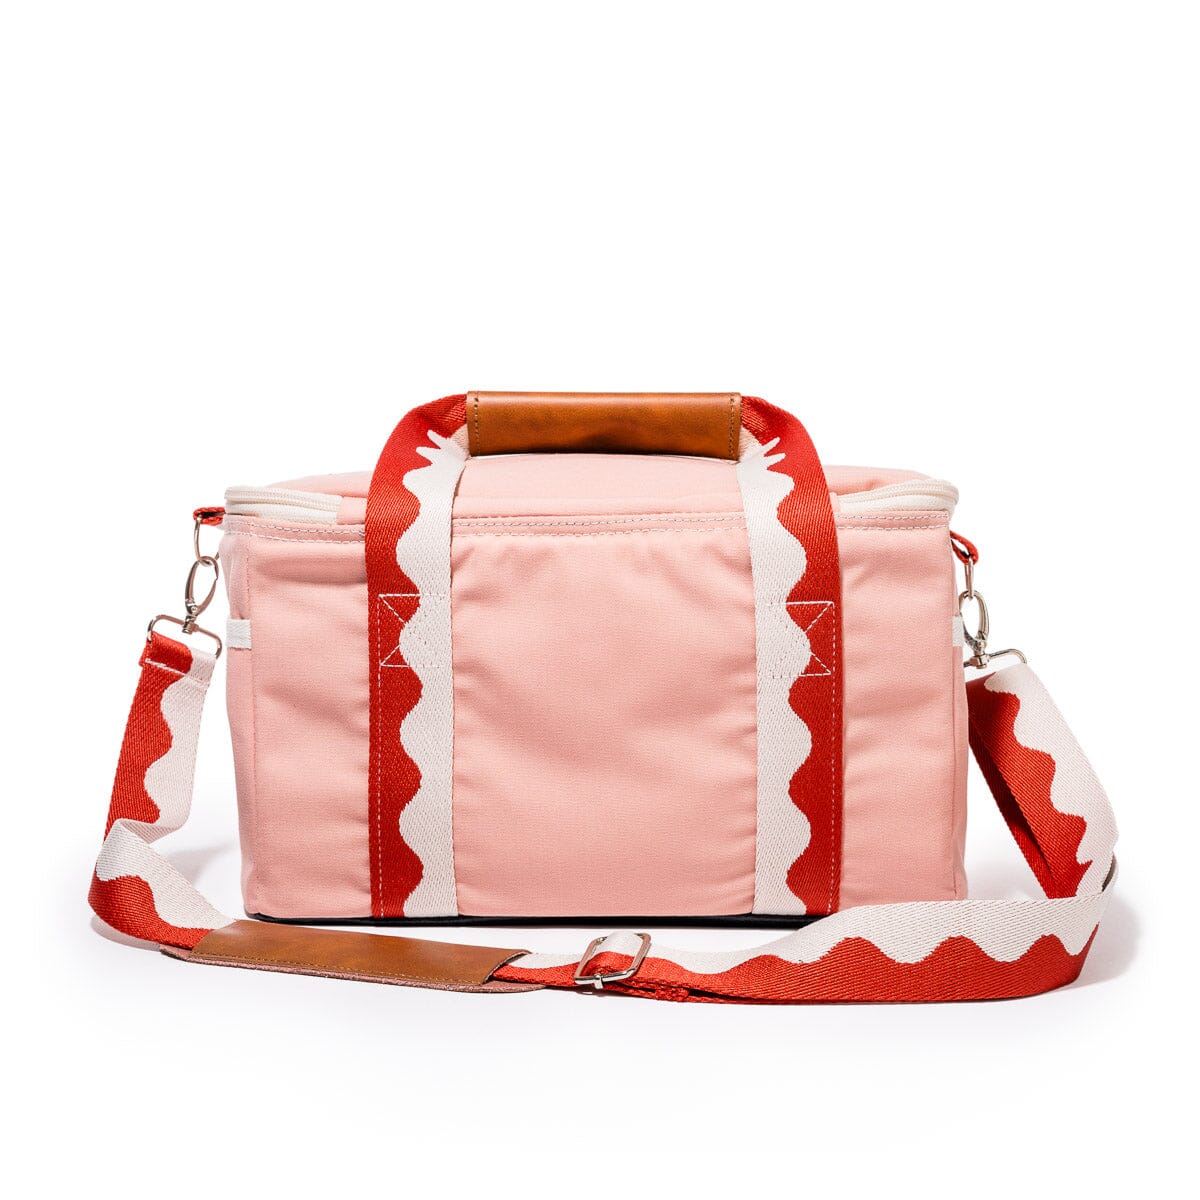 The Premium Cooler Bag - Rivie Pink Premium Cooler Bag Business & Pleasure Co Aus 